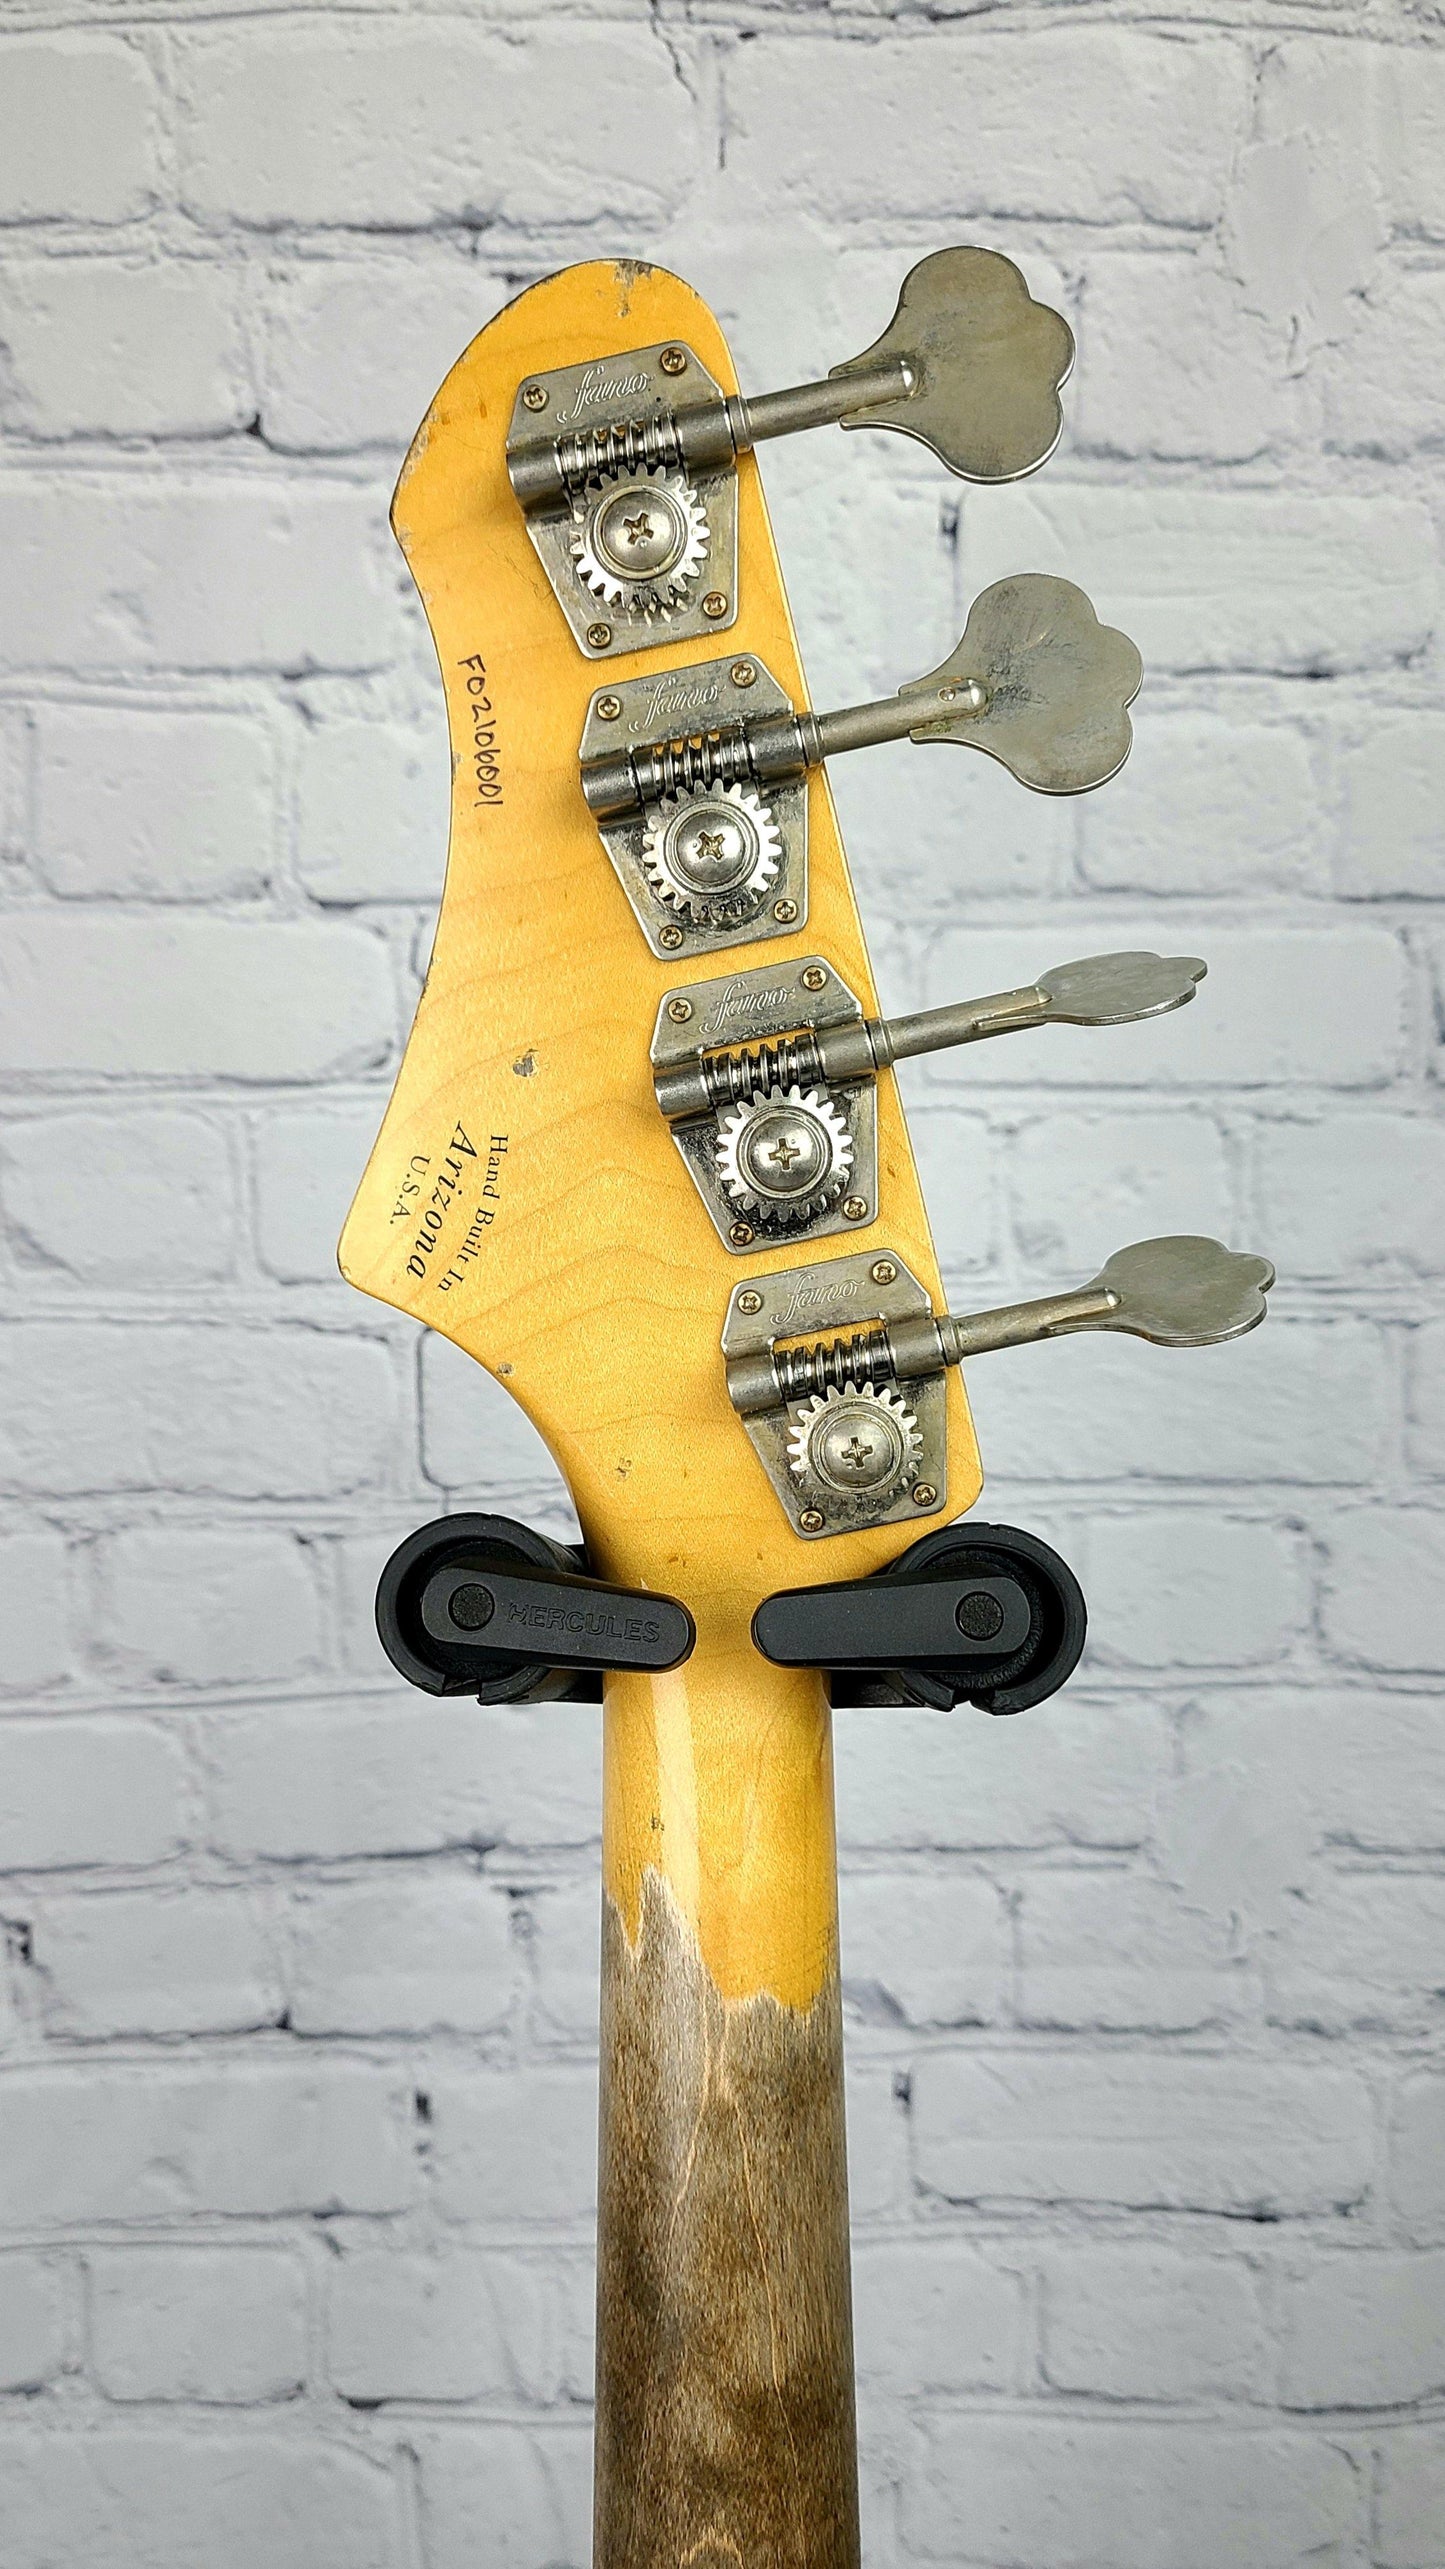 Fano Oltre JM4 Bass Guitar Tobacco Burst Gold Anodized Pickguard USA Made - Guitar Brando